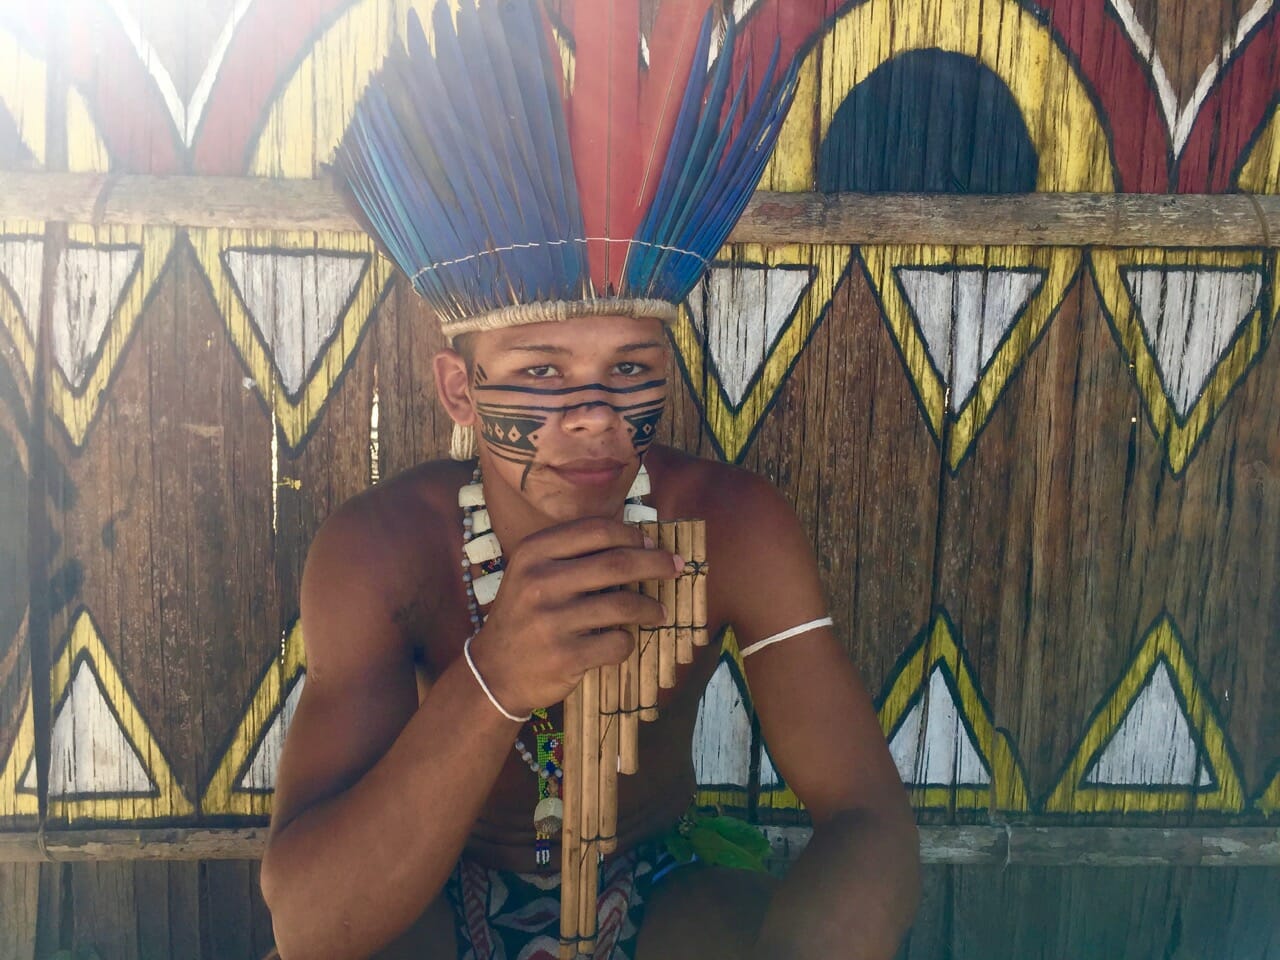 tribos próximas a Manaus